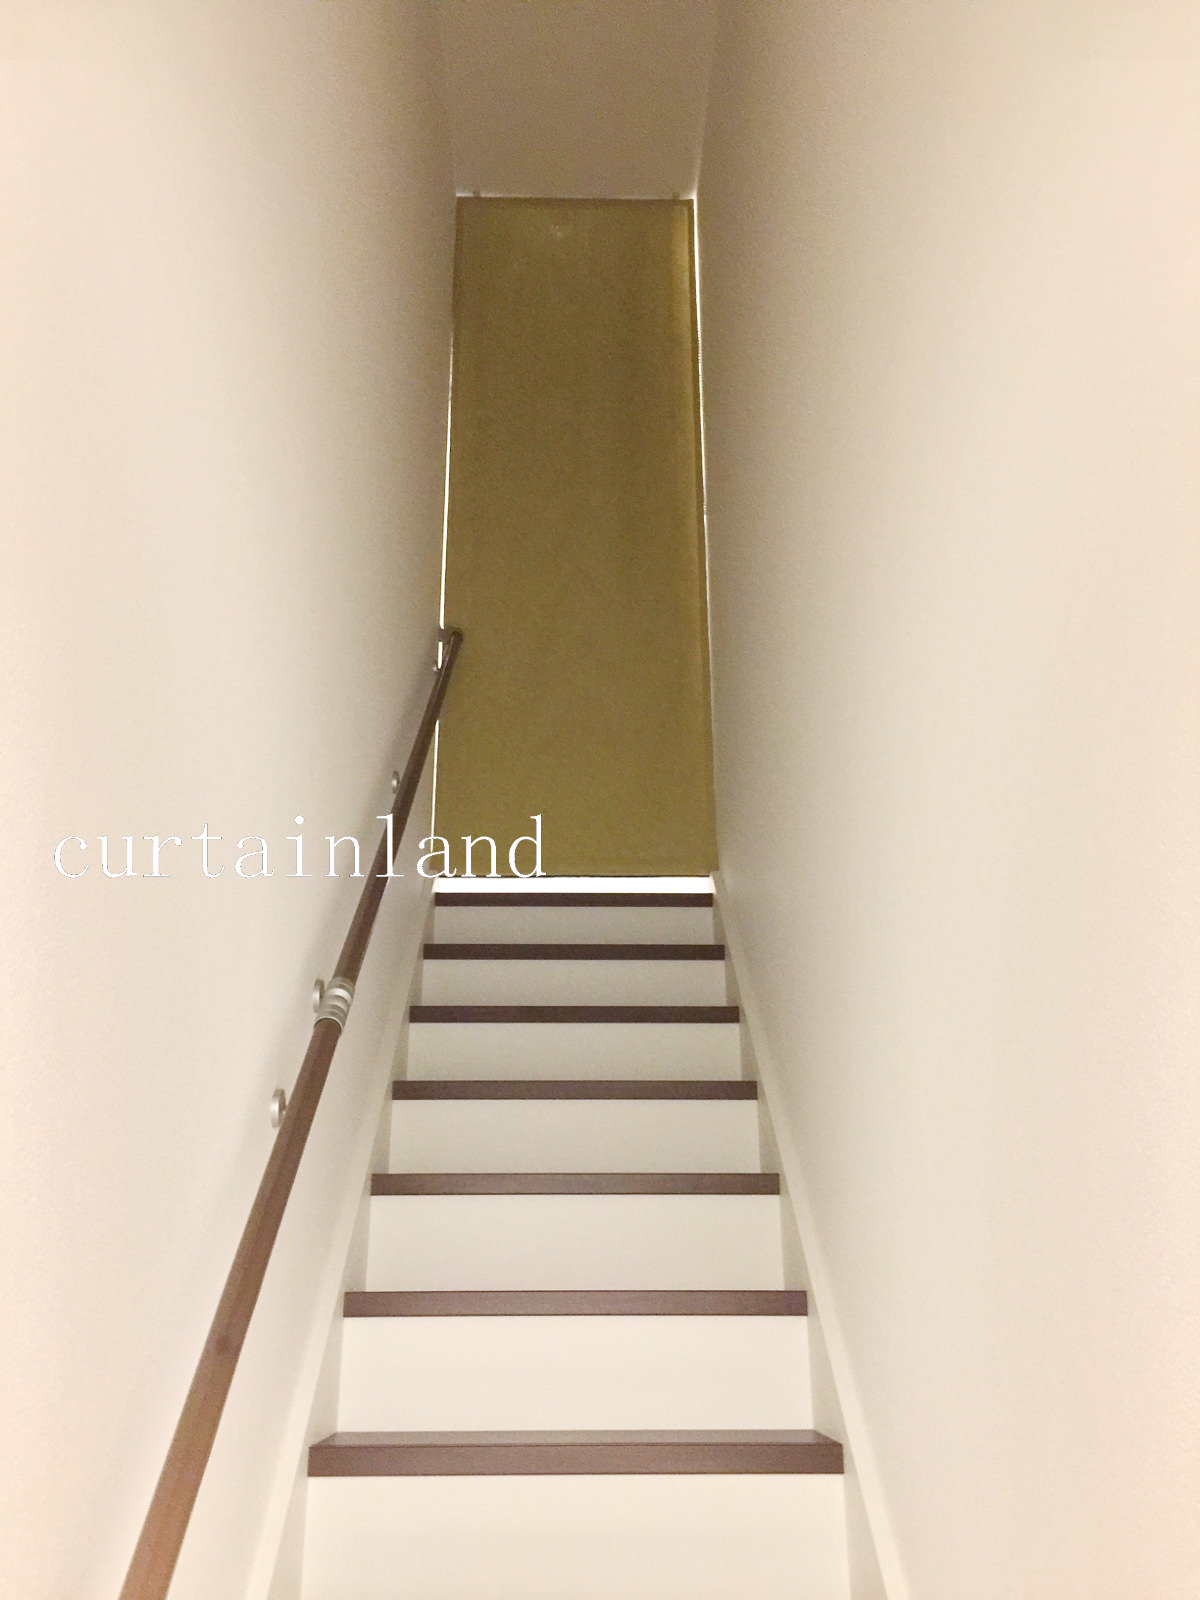 リビング階段を北欧デザインシェードでおしゃれに寒さ対策 カーテンランドの施工事例集ブログ